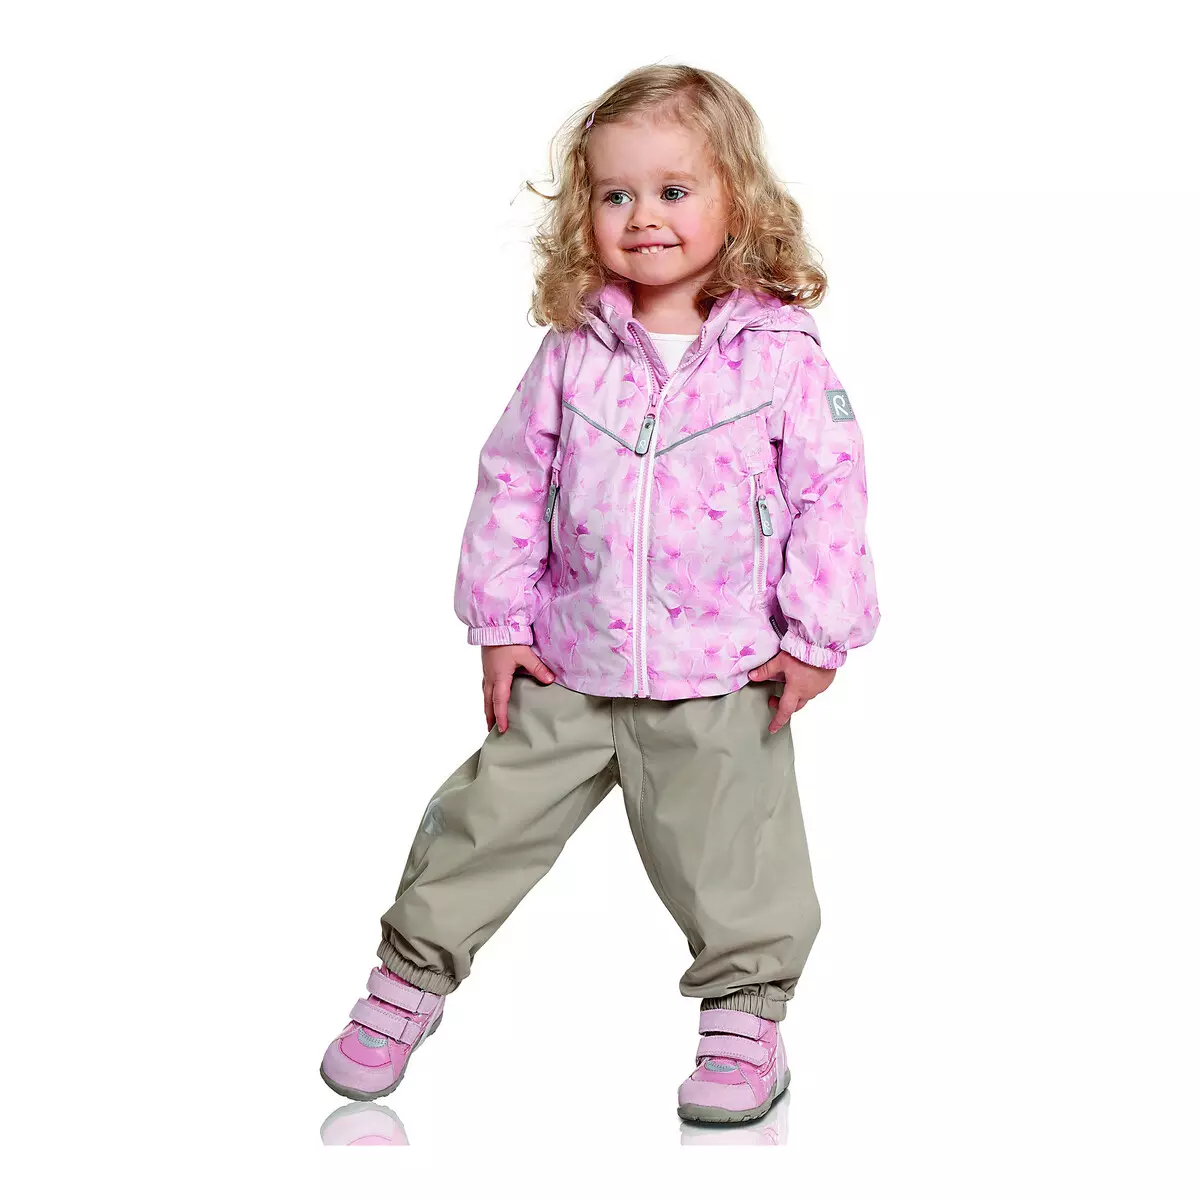 Reim Boots (72 сурет): қызыл балаларға арналған қысқы балалар модельдері, Reima, өлшемді тор және шолулар Reima 2256_7